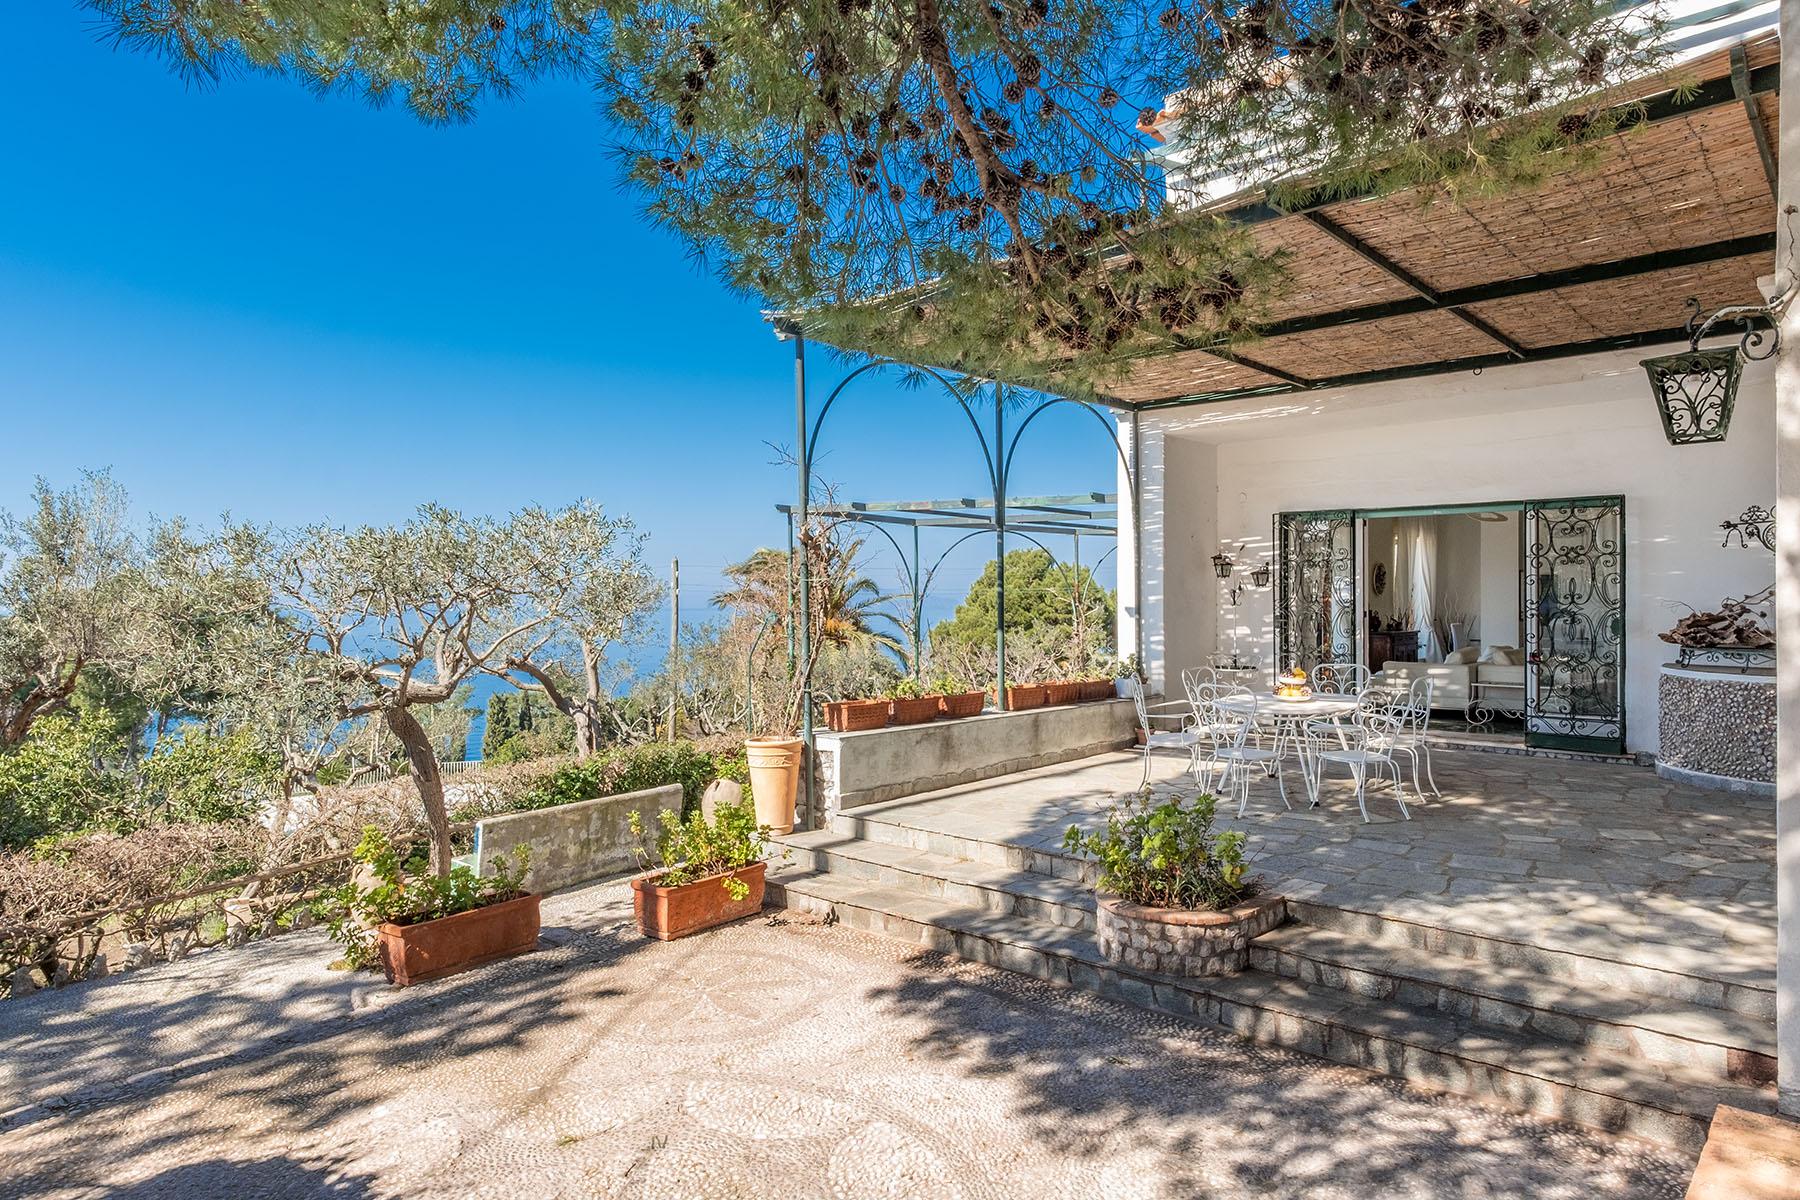 Splendida villa panoramica con giardino ad Anacapri - 1